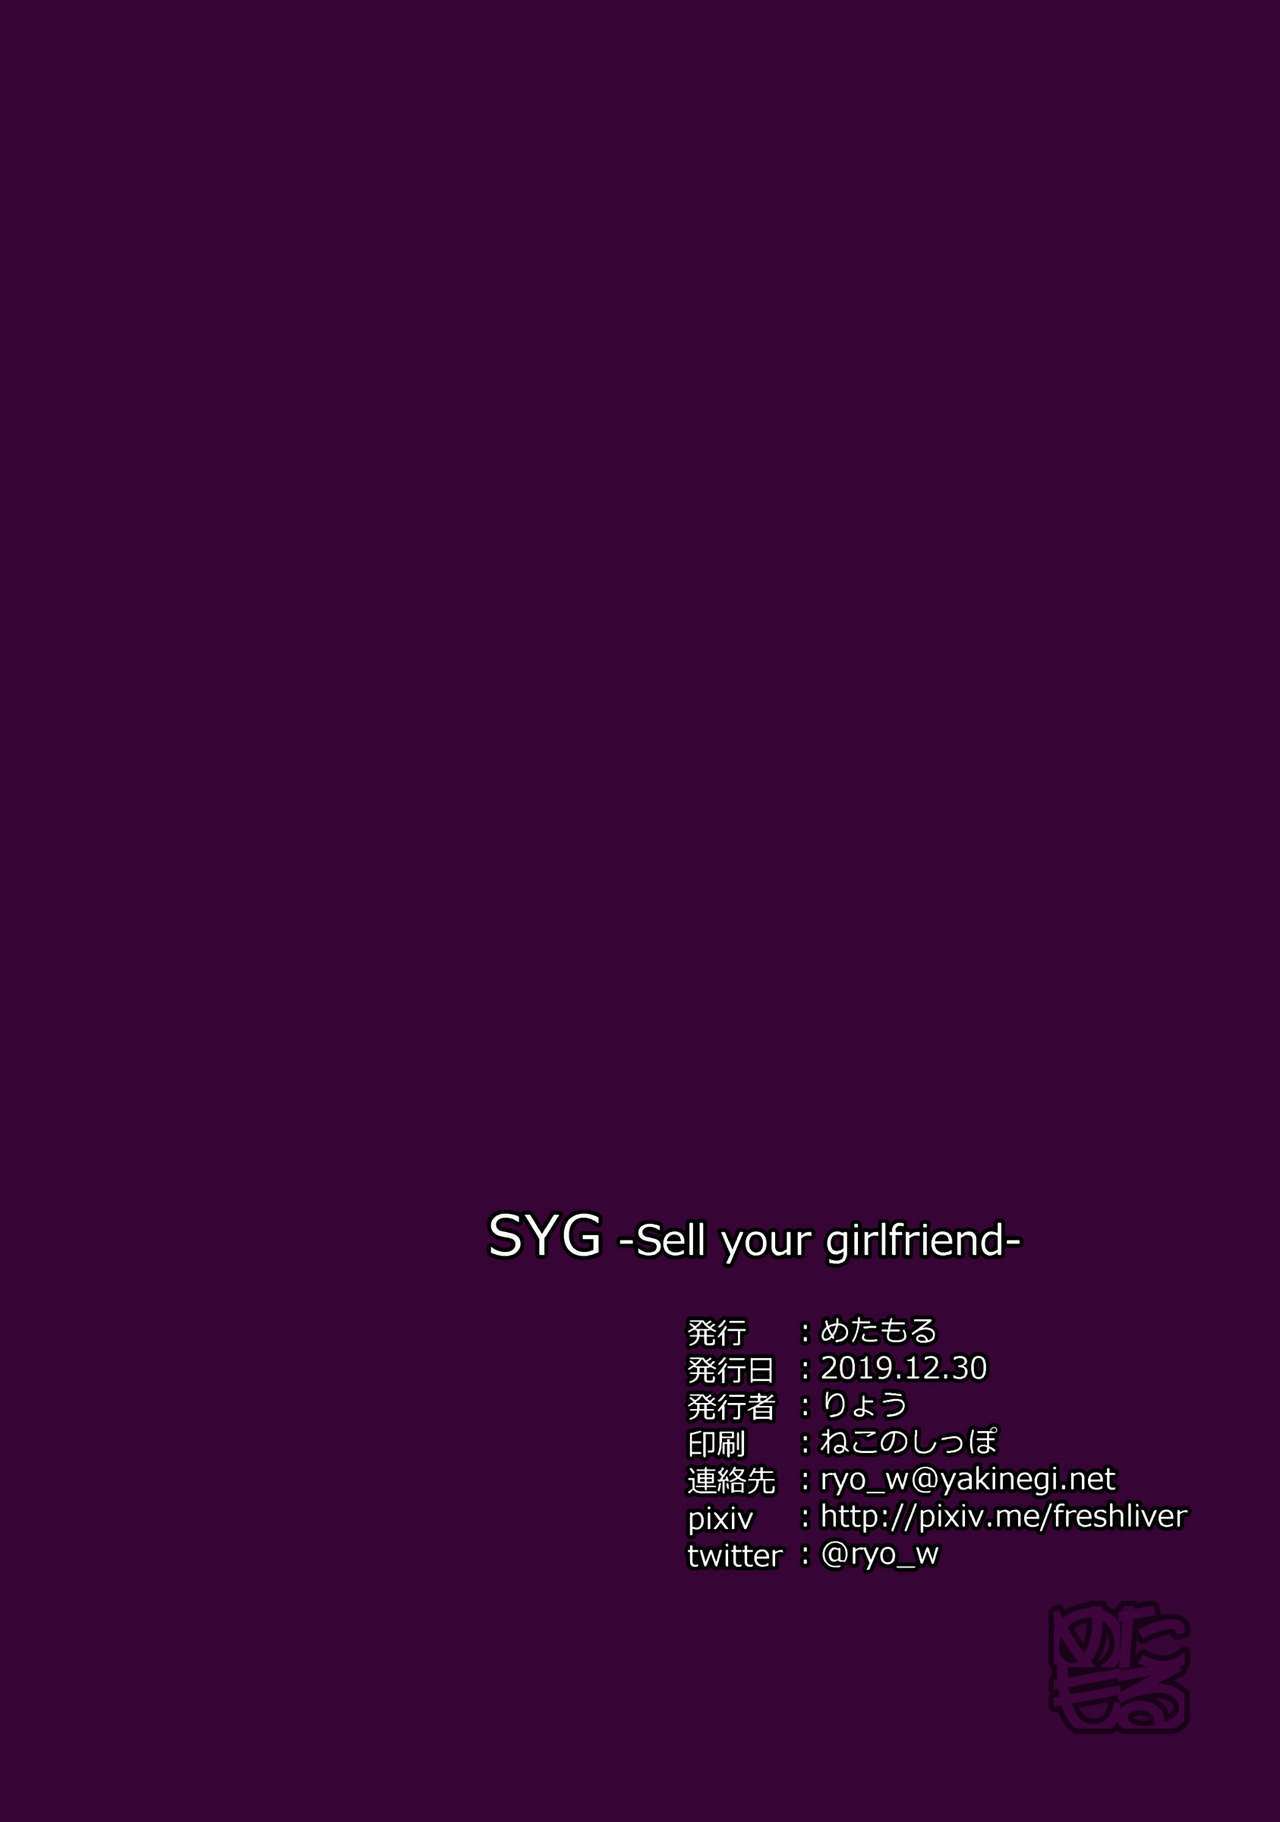 SYG-あなたのガールフレンドを売る-